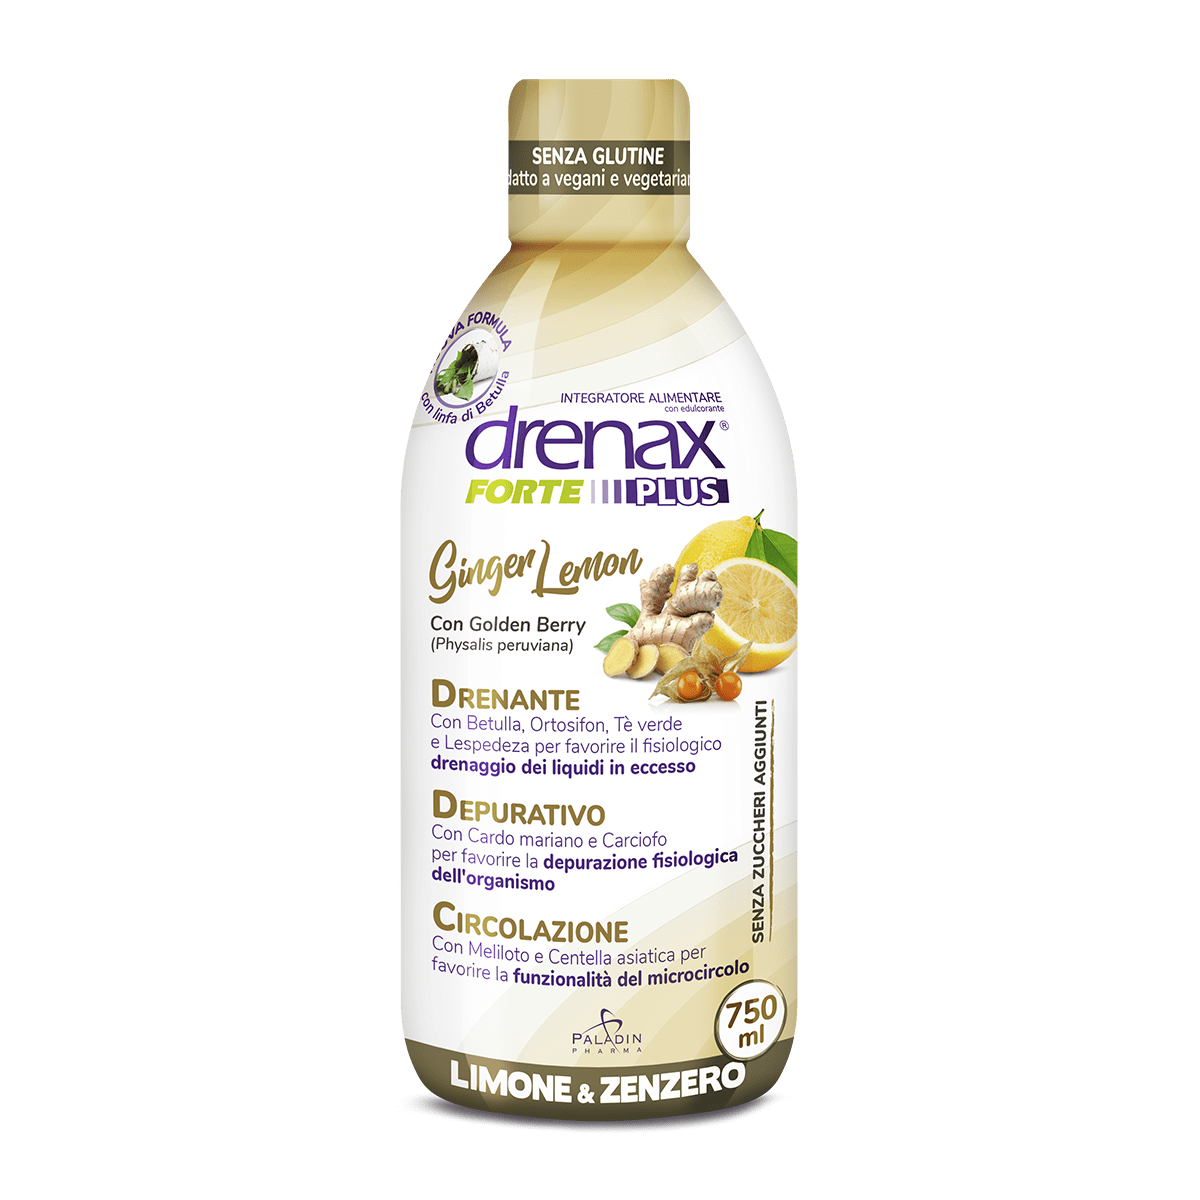 Drenax Forte Ginger Lemon